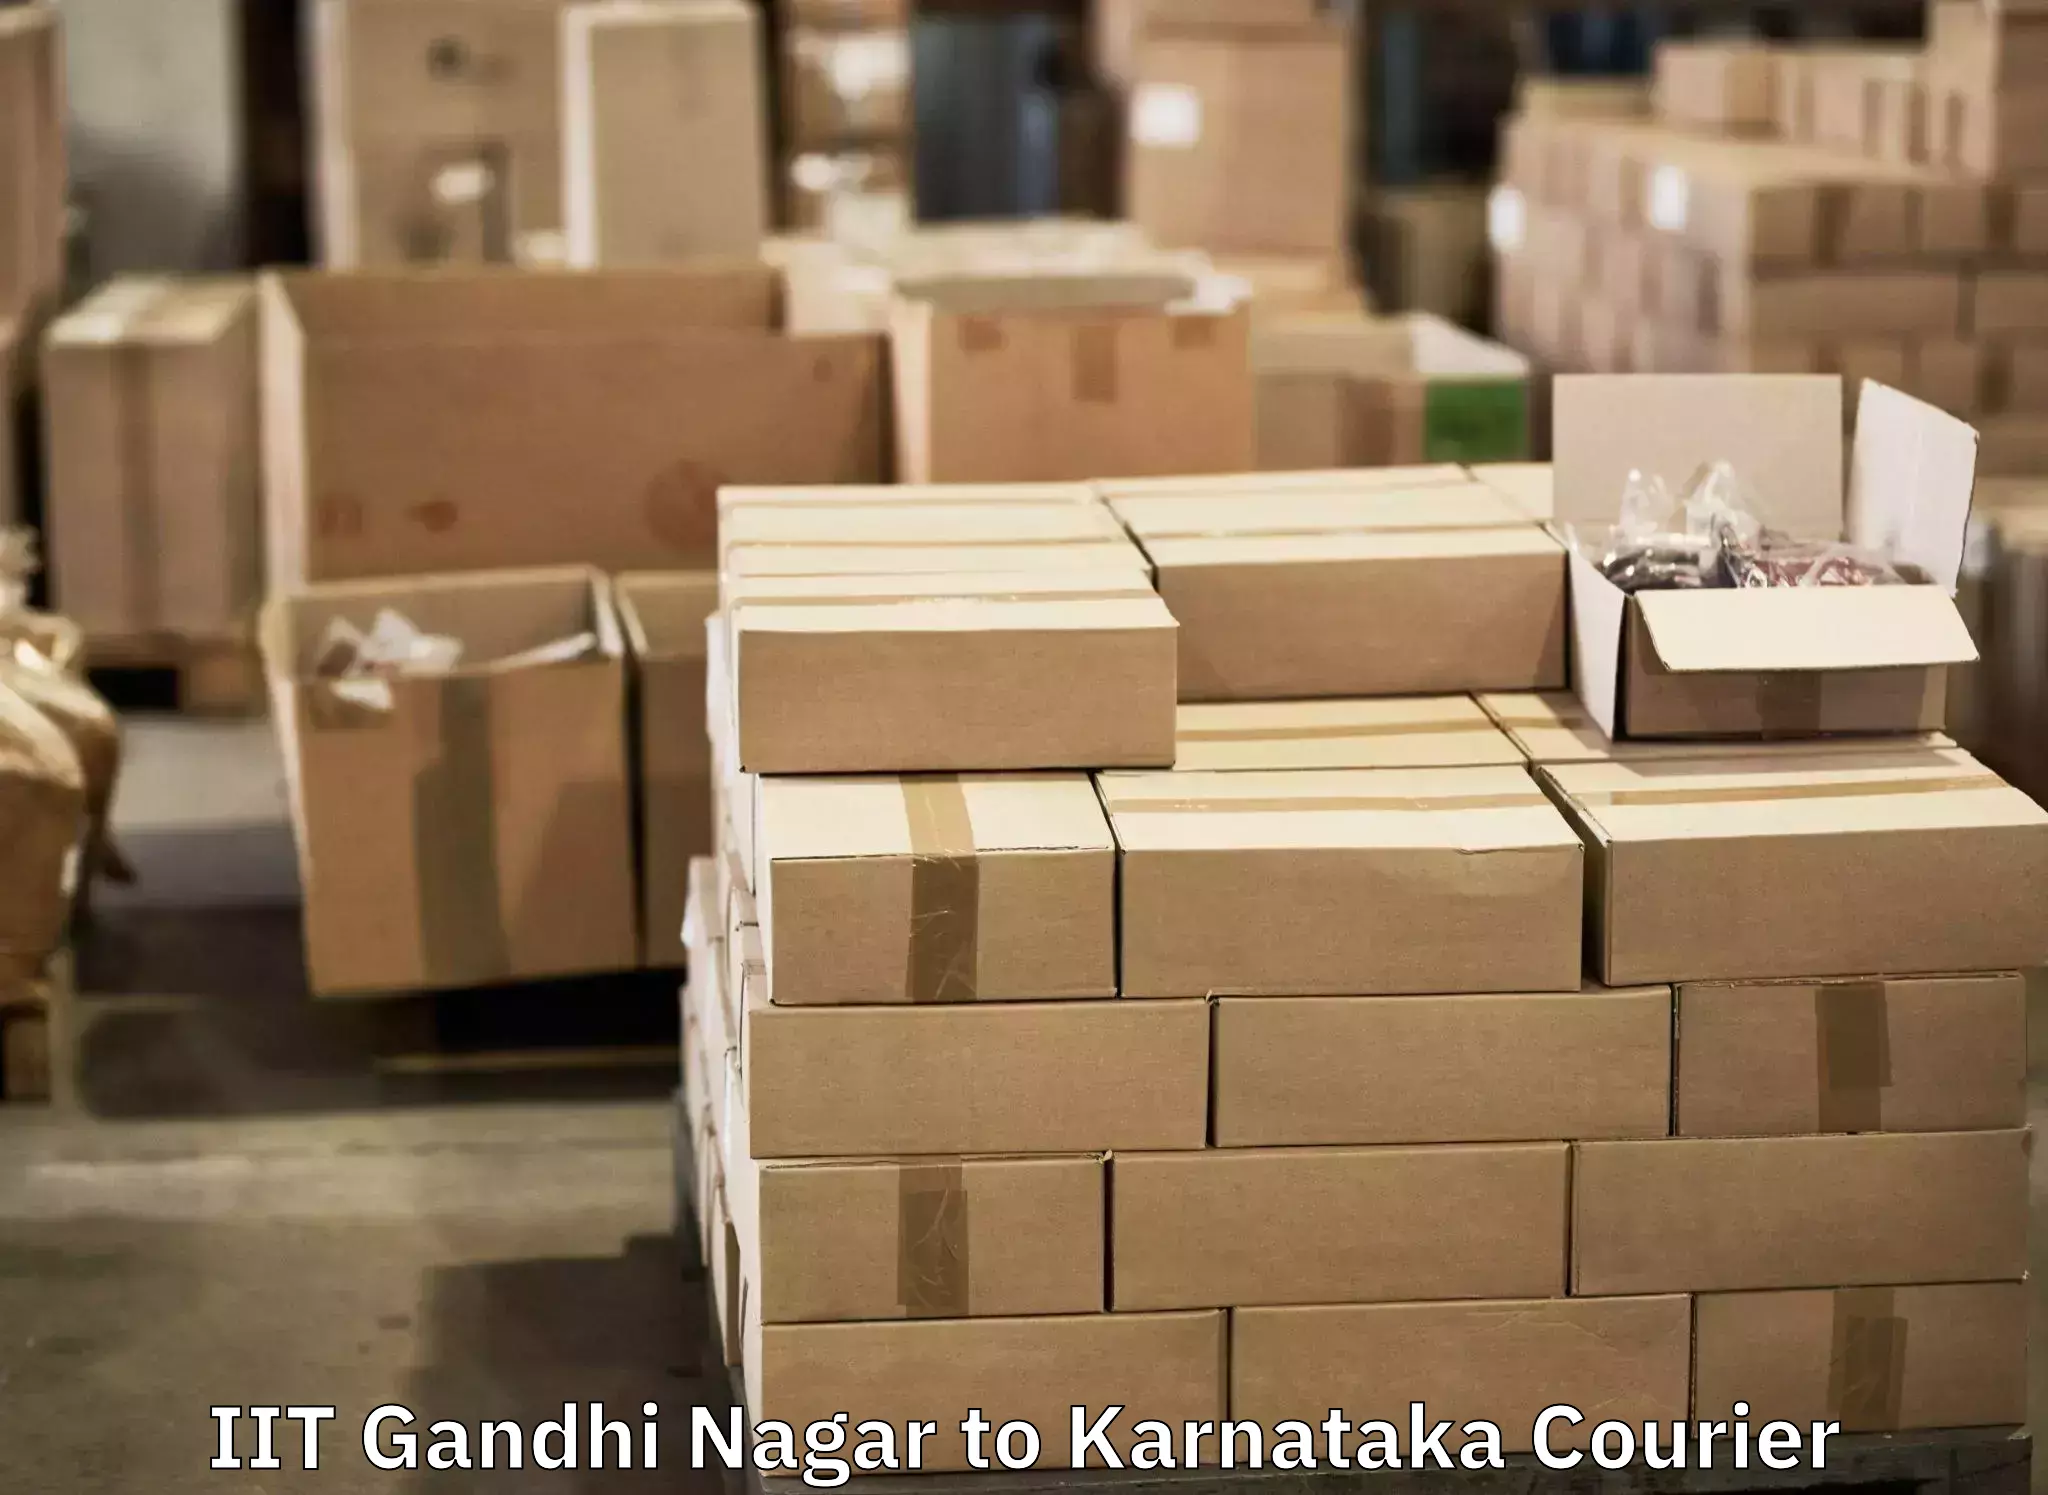 Online luggage shipping booking IIT Gandhi Nagar to Kodagu